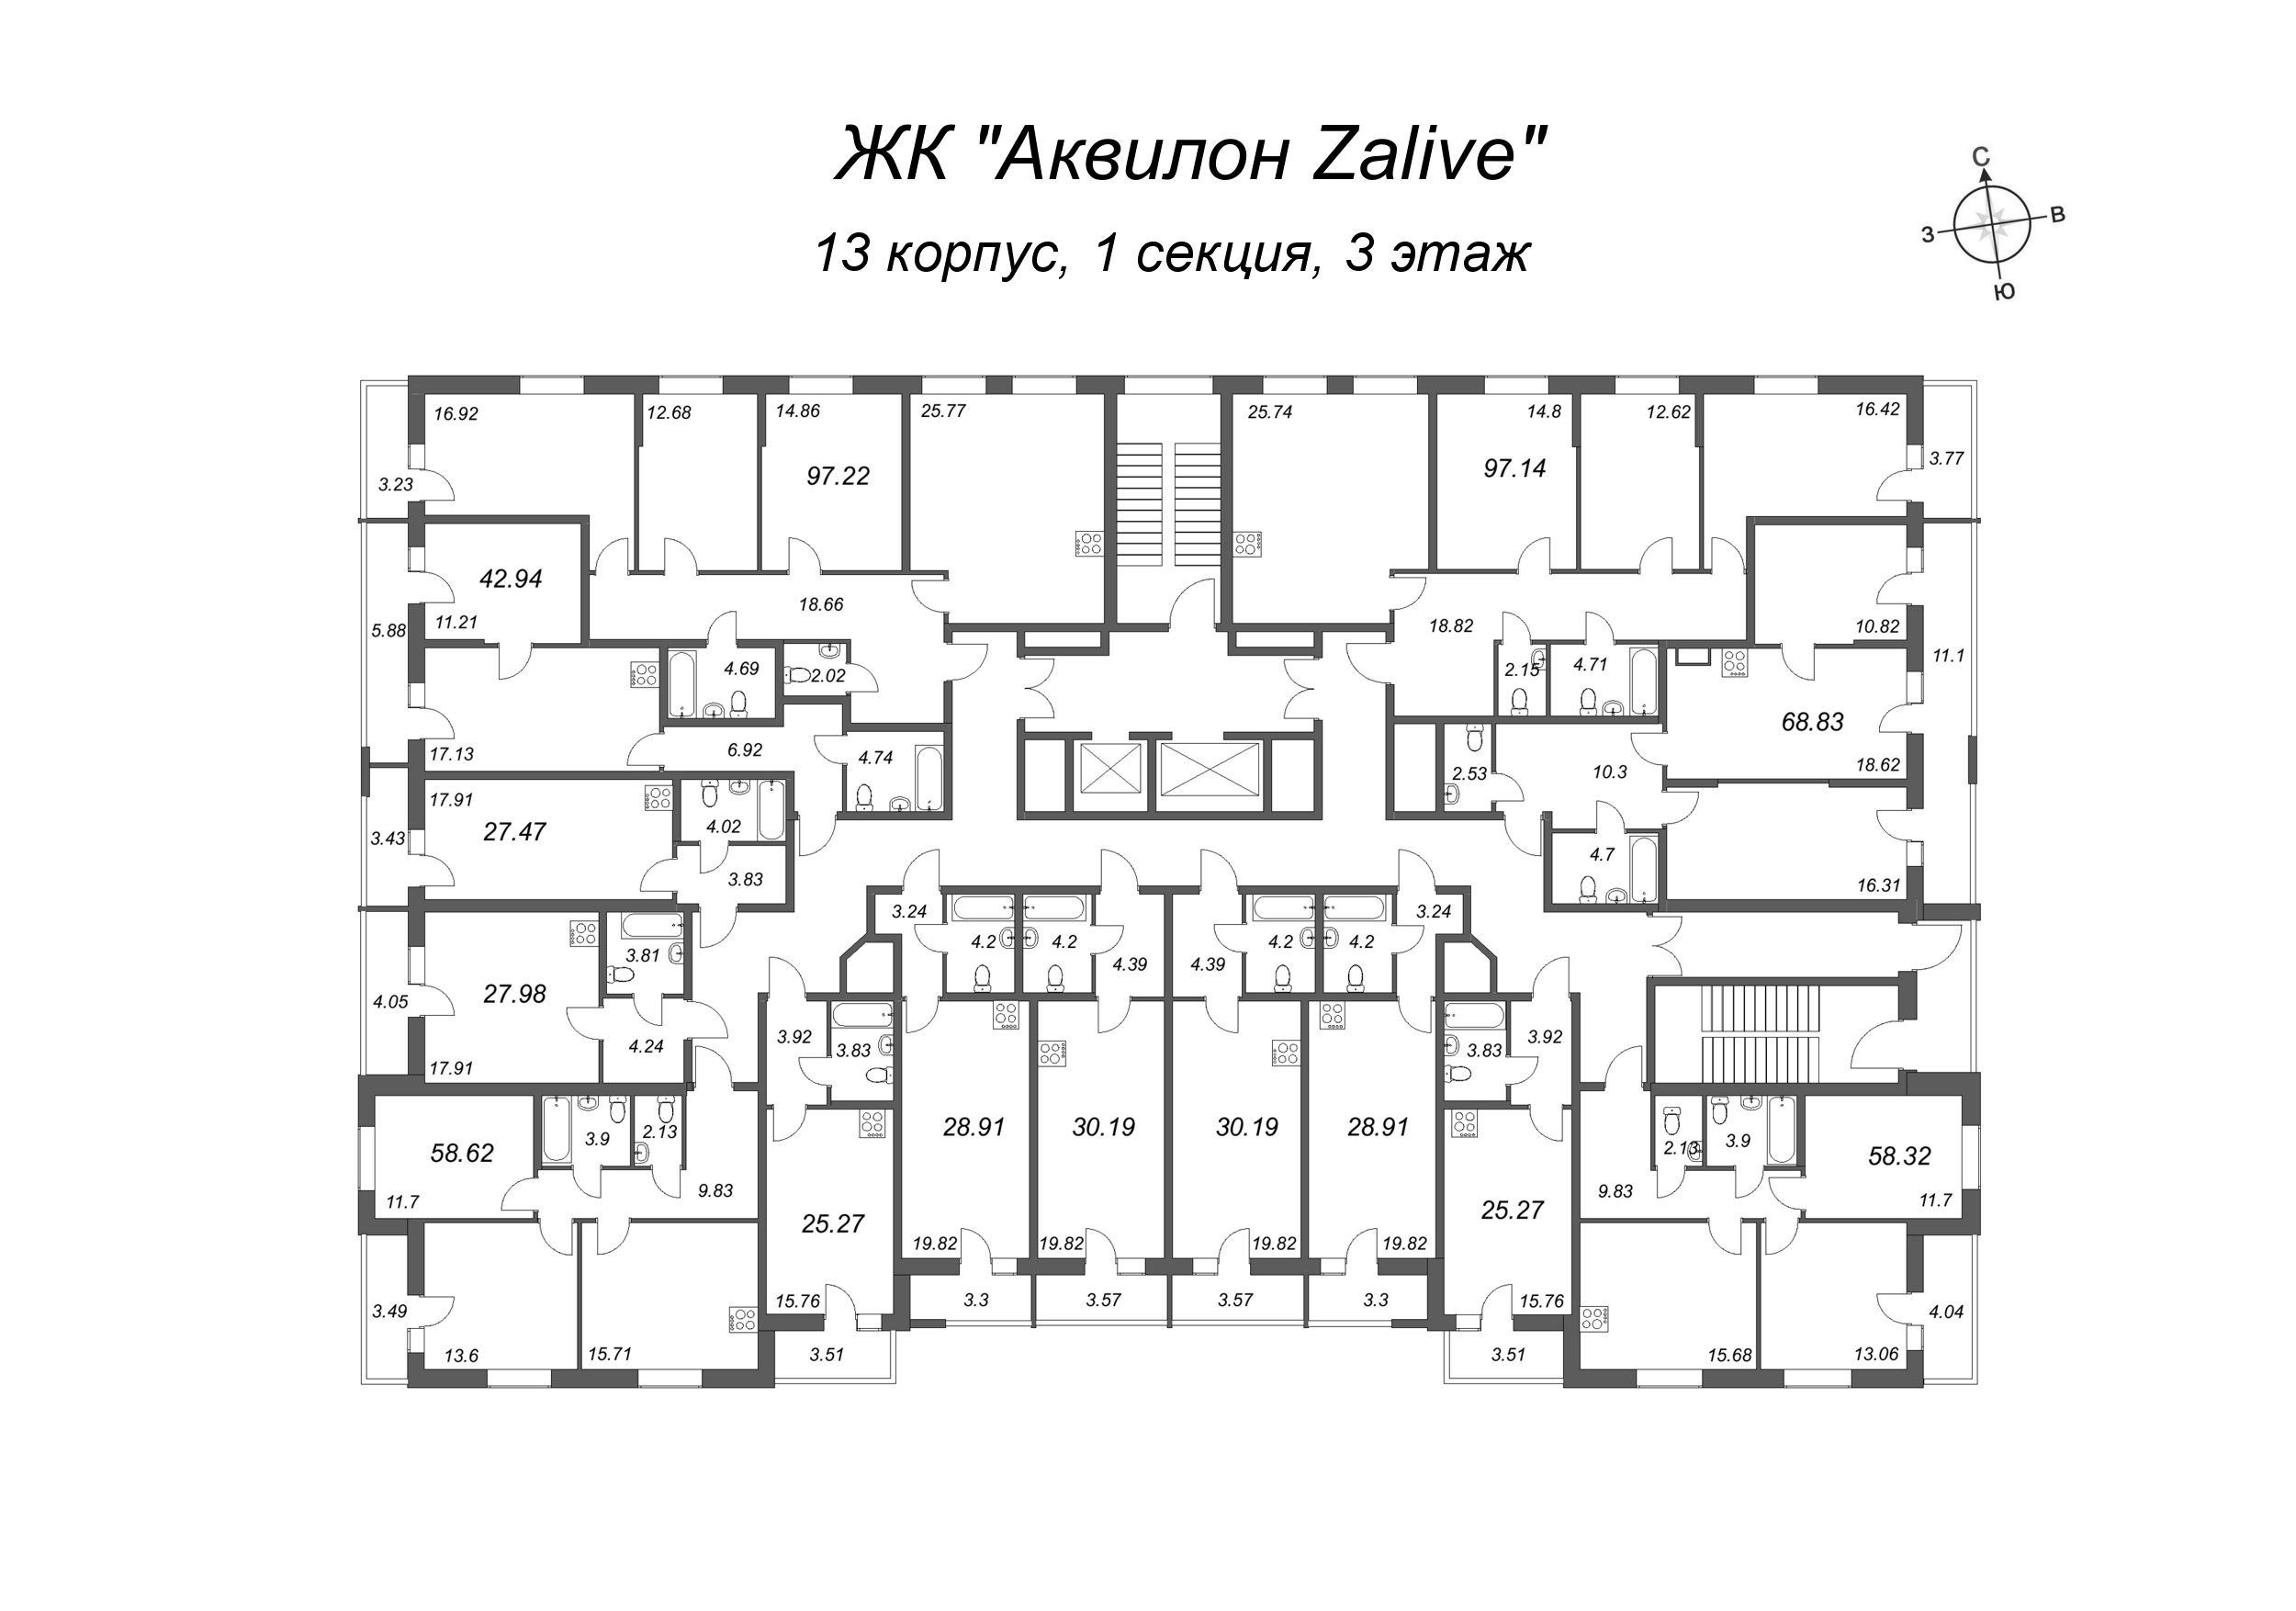 4-комнатная (Евро) квартира, 95.8 м² в ЖК "Аквилон Zalive" - планировка этажа